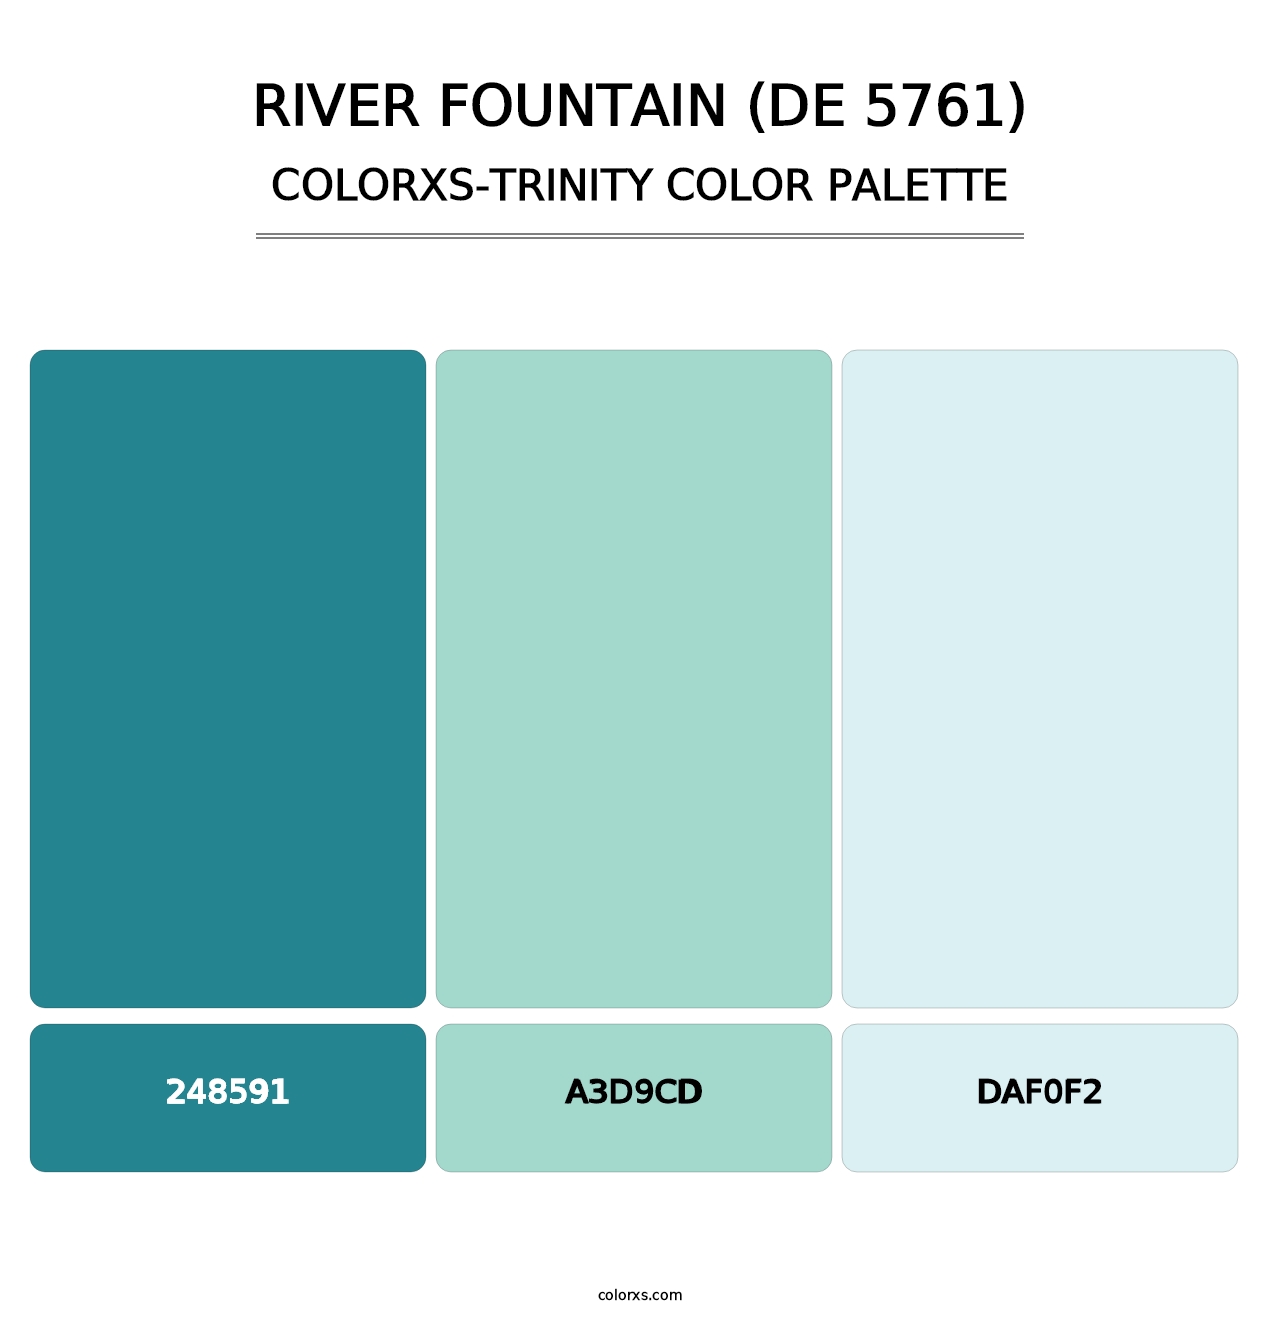 River Fountain (DE 5761) - Colorxs Trinity Palette